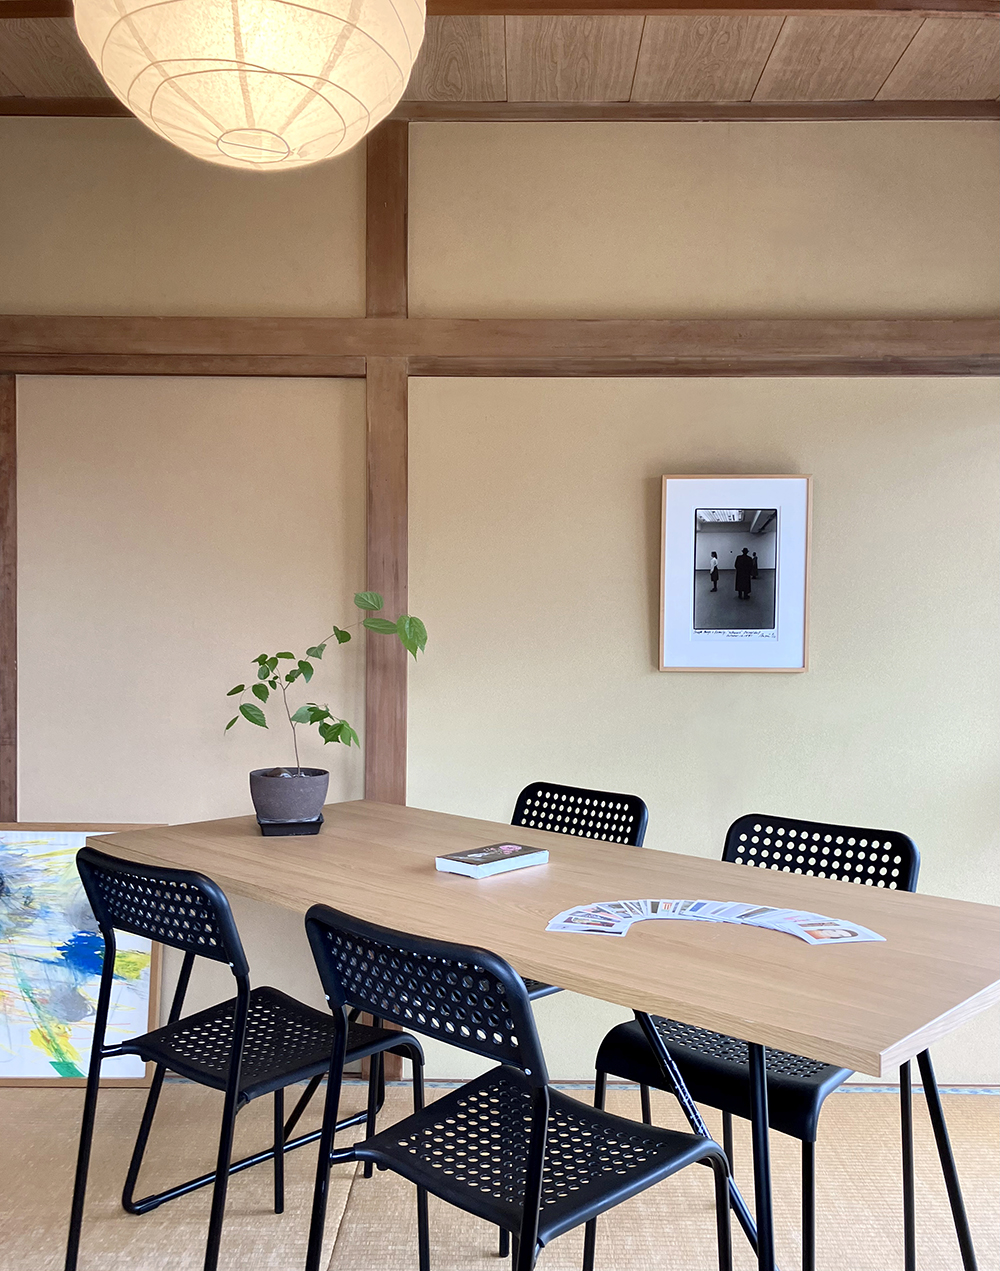 アートコミュニケーションランドリー小田川悠が開いているつくばと牛久のカフェのようなアートスペースキンコサンチ、対話型美術鑑賞も受けつけています。アートブック、ブックカフェのように茨城つくば市でのんびりできるスペースです。